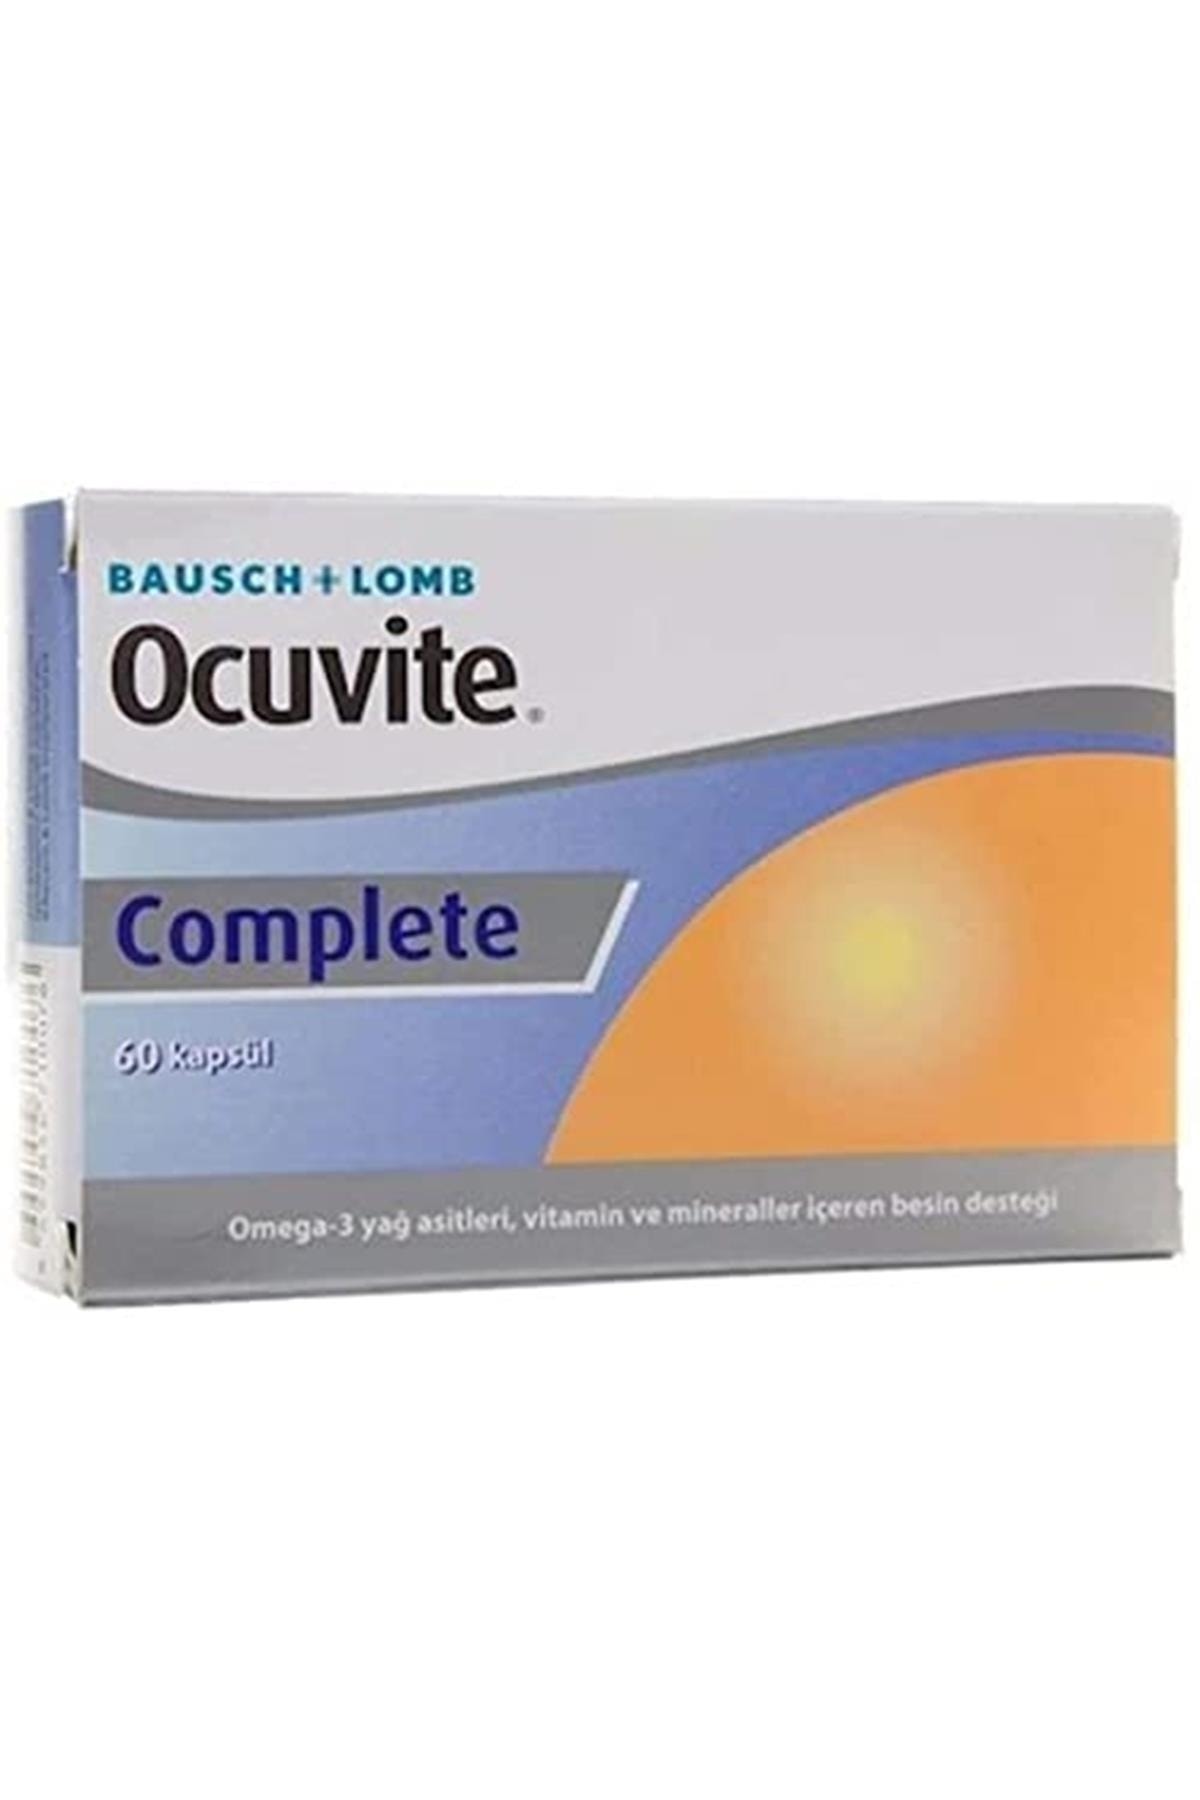 Bausch & Lomb Ocuvite Complete 60 Kap